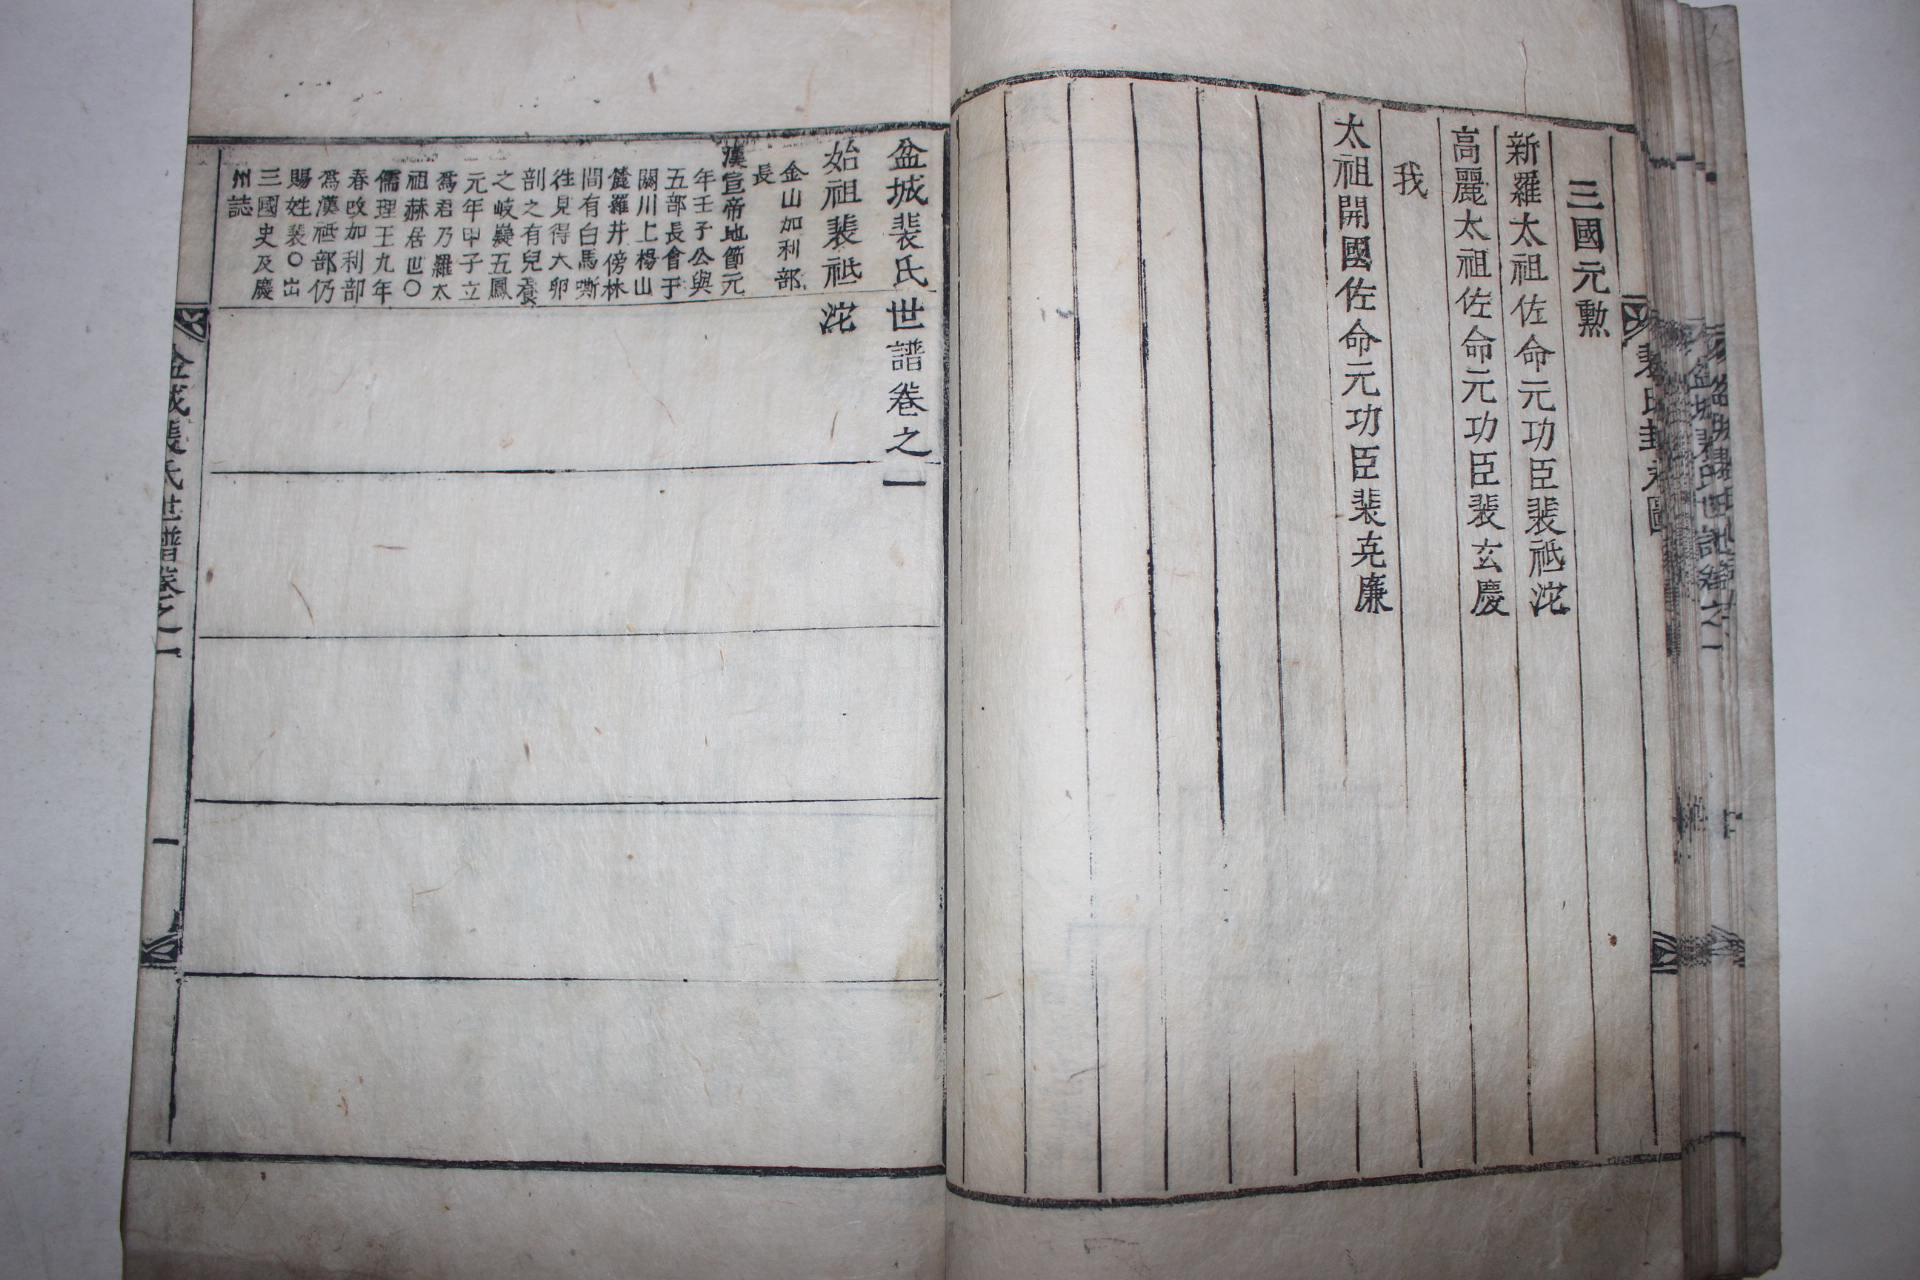 1862년(동치원년) 목활자본 분성배씨세보(盆城裵氏世譜) 5책